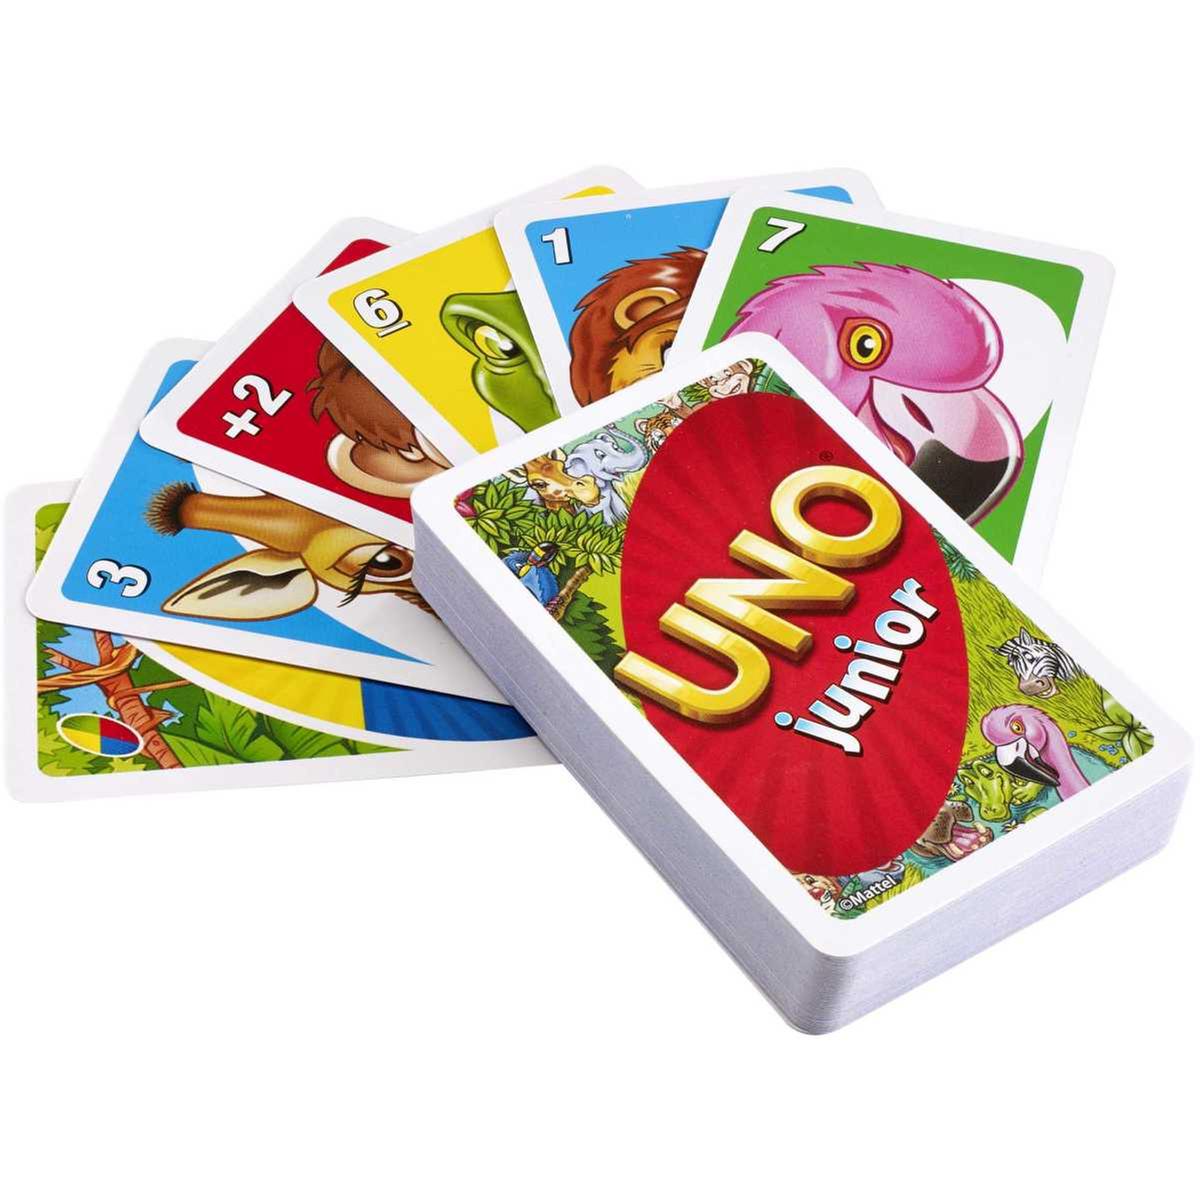 Cartas UNO Básico, Jogos cartas criança